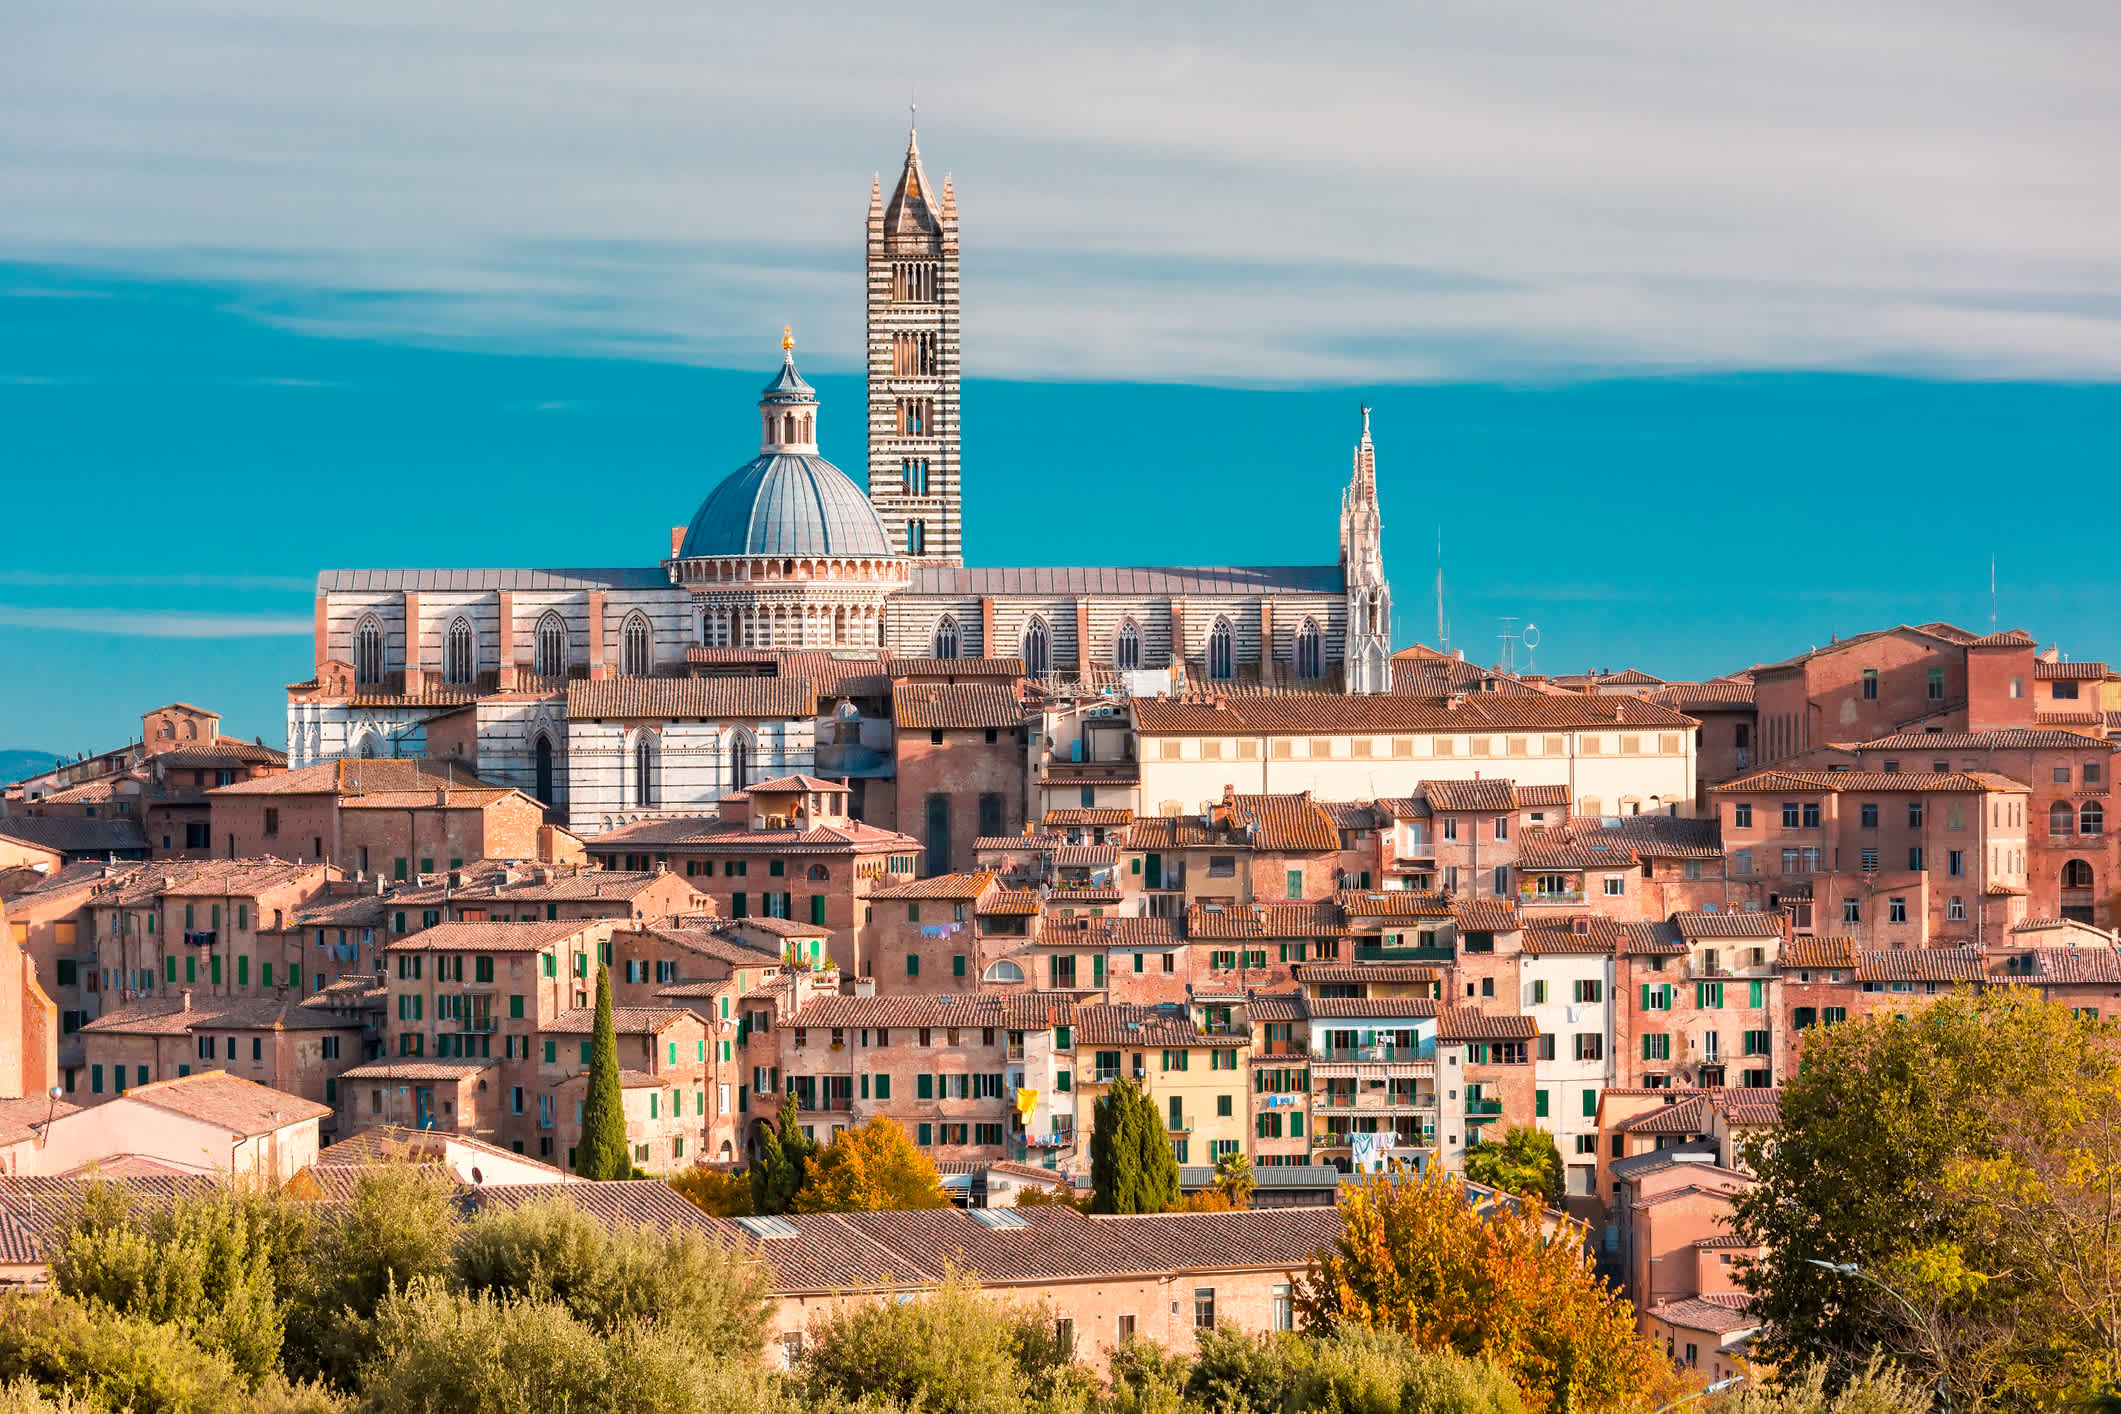 Entdecken Sie Italien mit einer Reise nach Siena.